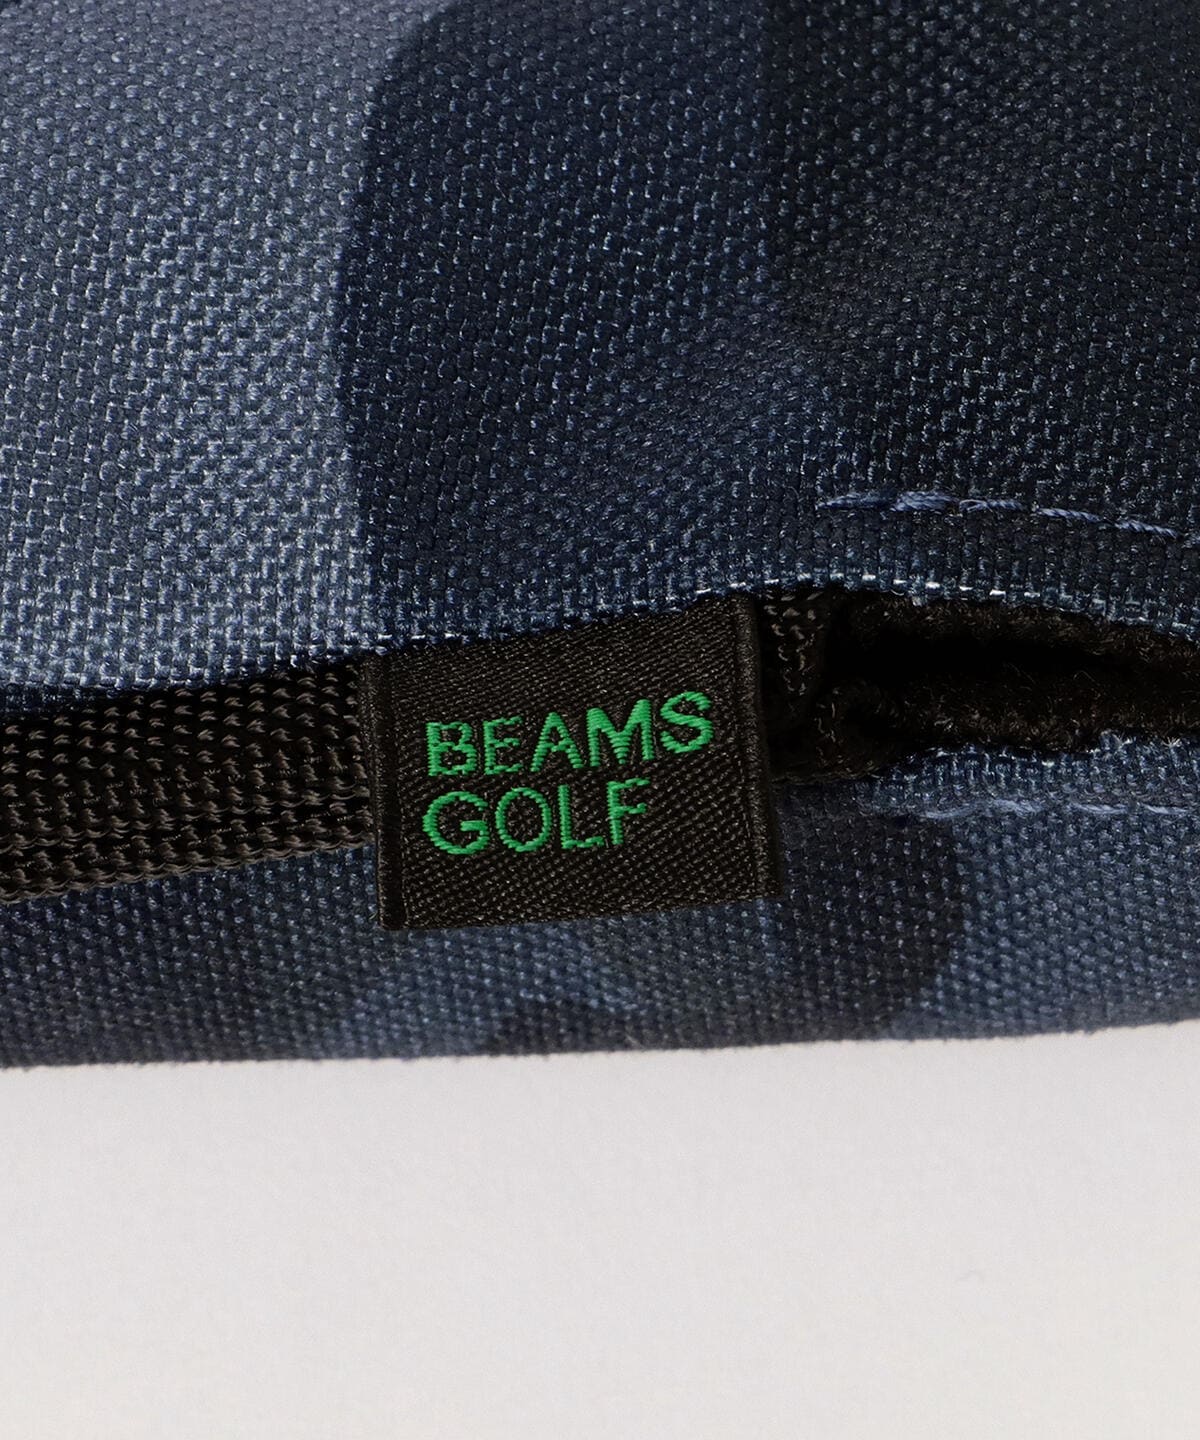 BEAMS GOLF（ビームス ゴルフ）BEAMS GOLF / ブルーグレー カモフラージュ ヘッドカバー（ユーティリティ）（雑貨・ホビー・スポーツ  ゴルフグッズ）通販｜BEAMS